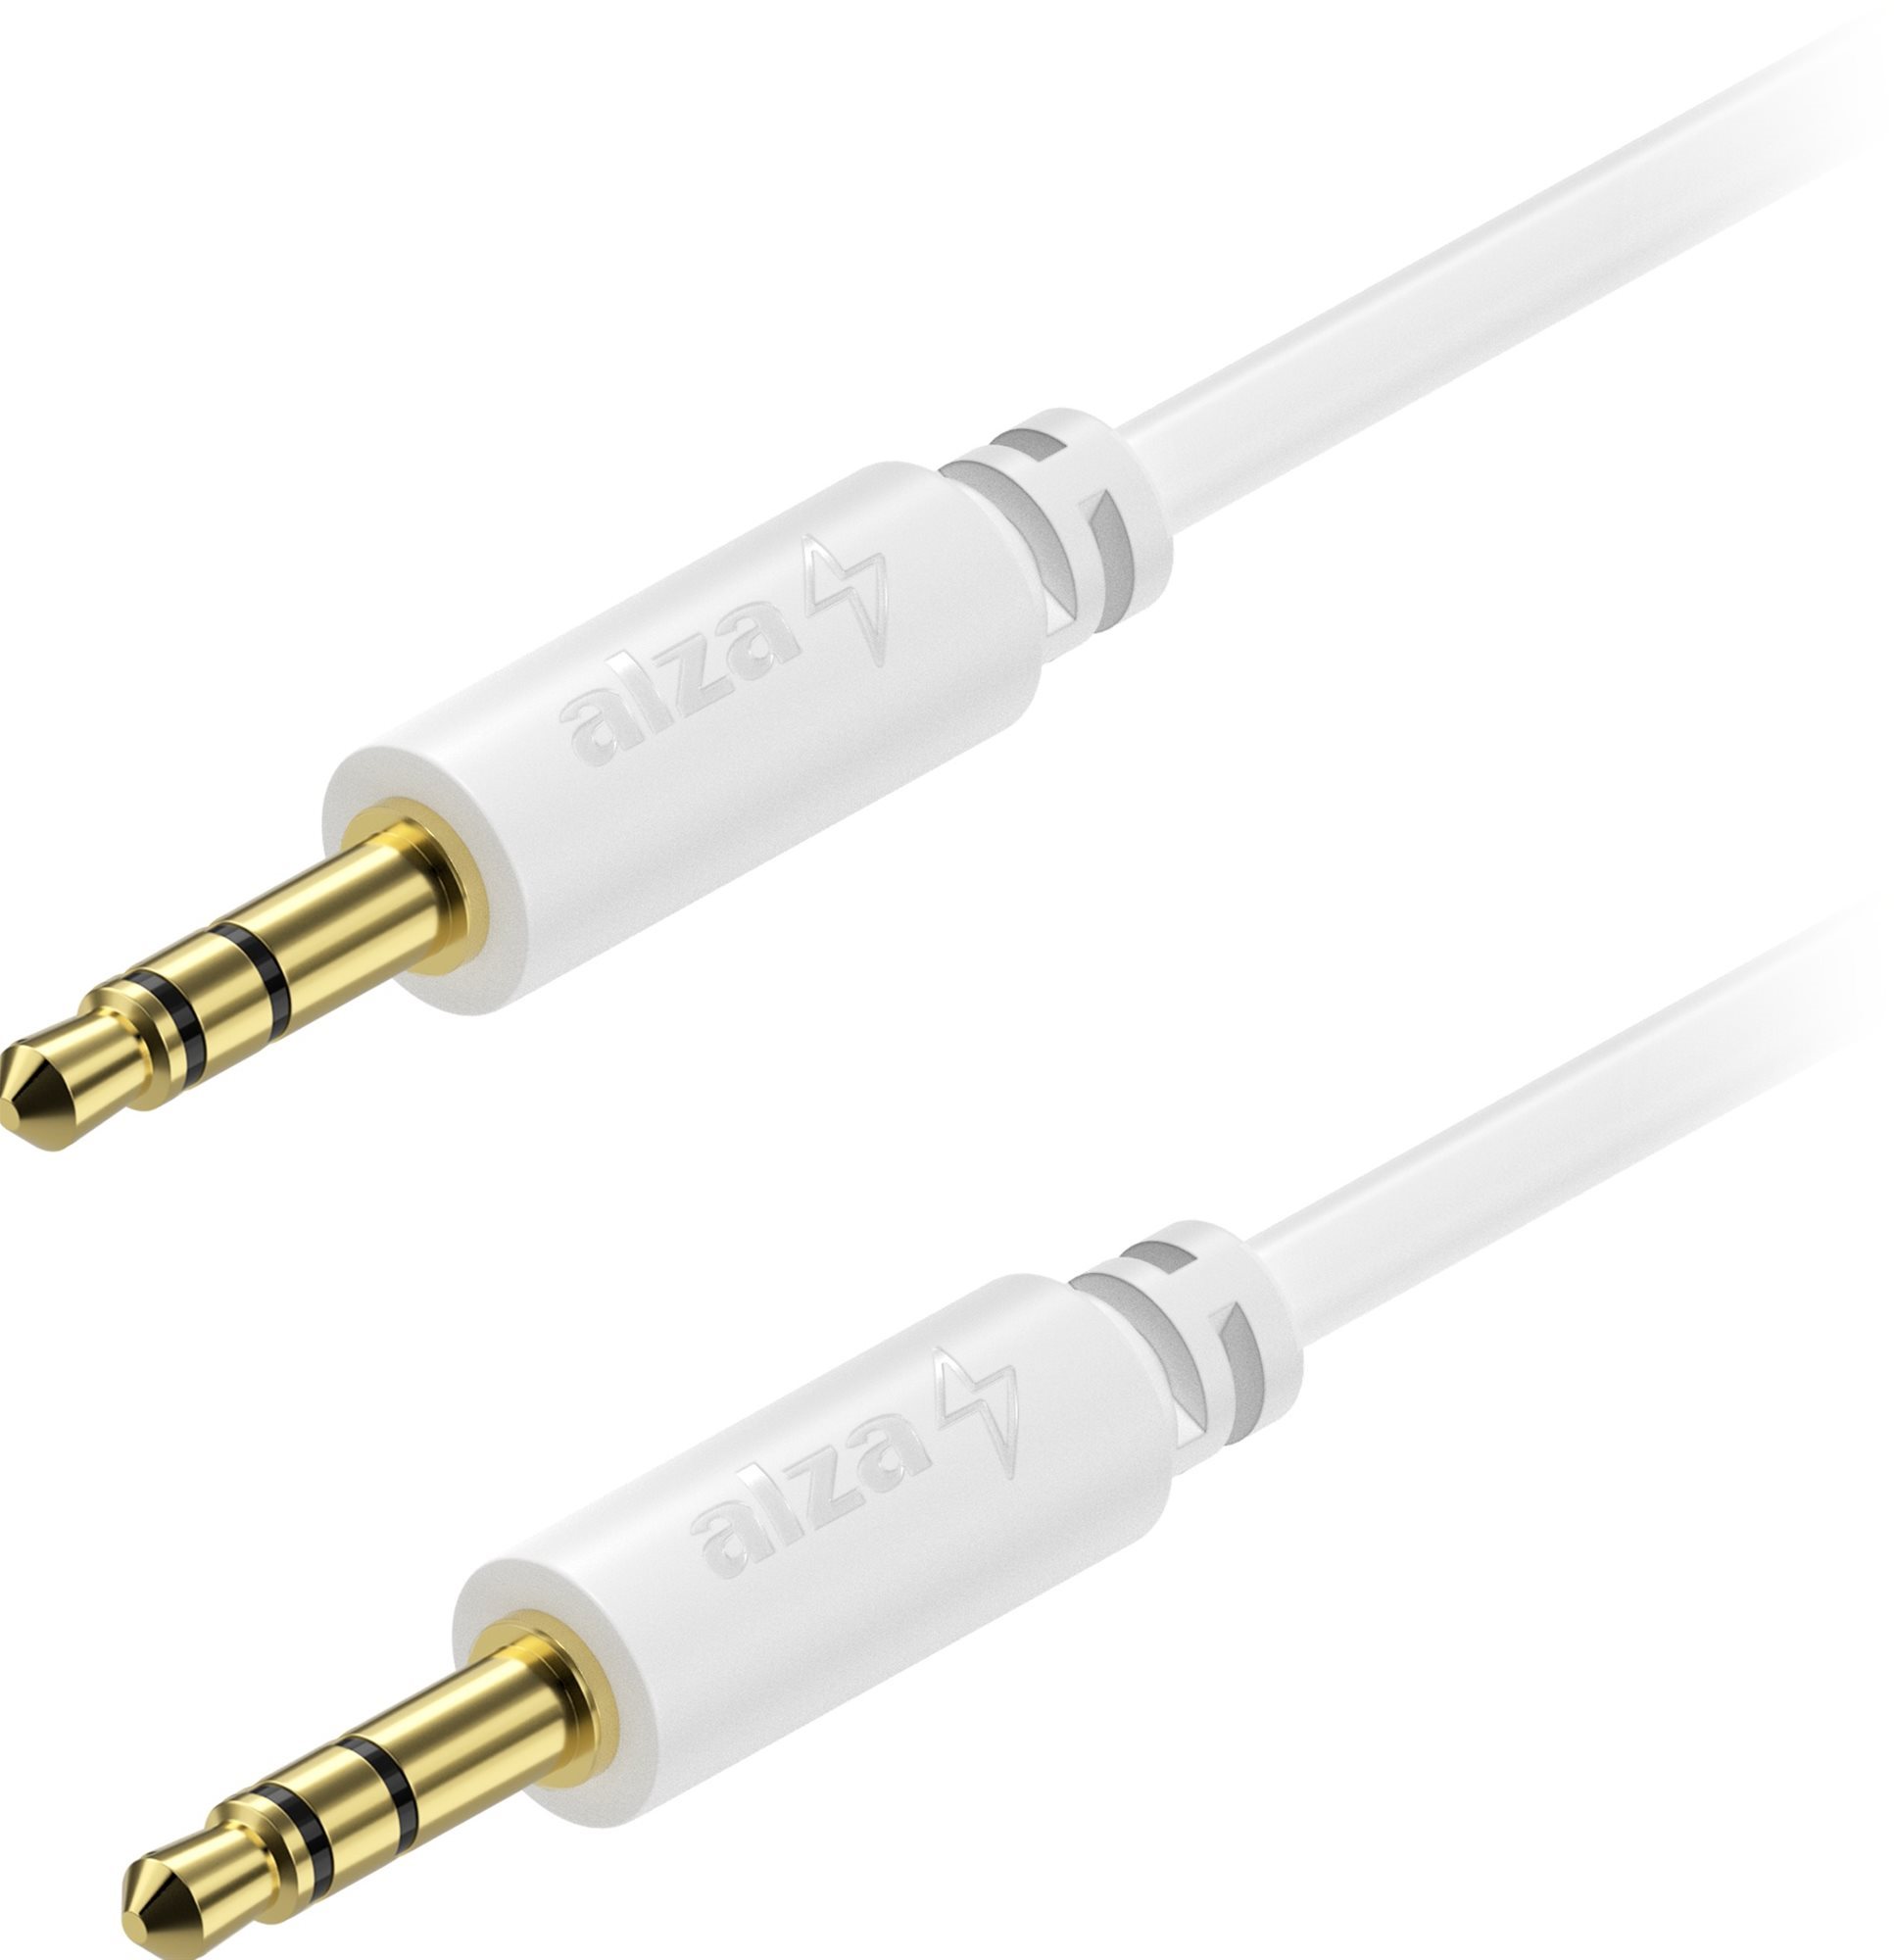 AlzaPower Core Audio 3,5 mm Jack (M) to 3,5 mm Jack (M) 1 m fehér